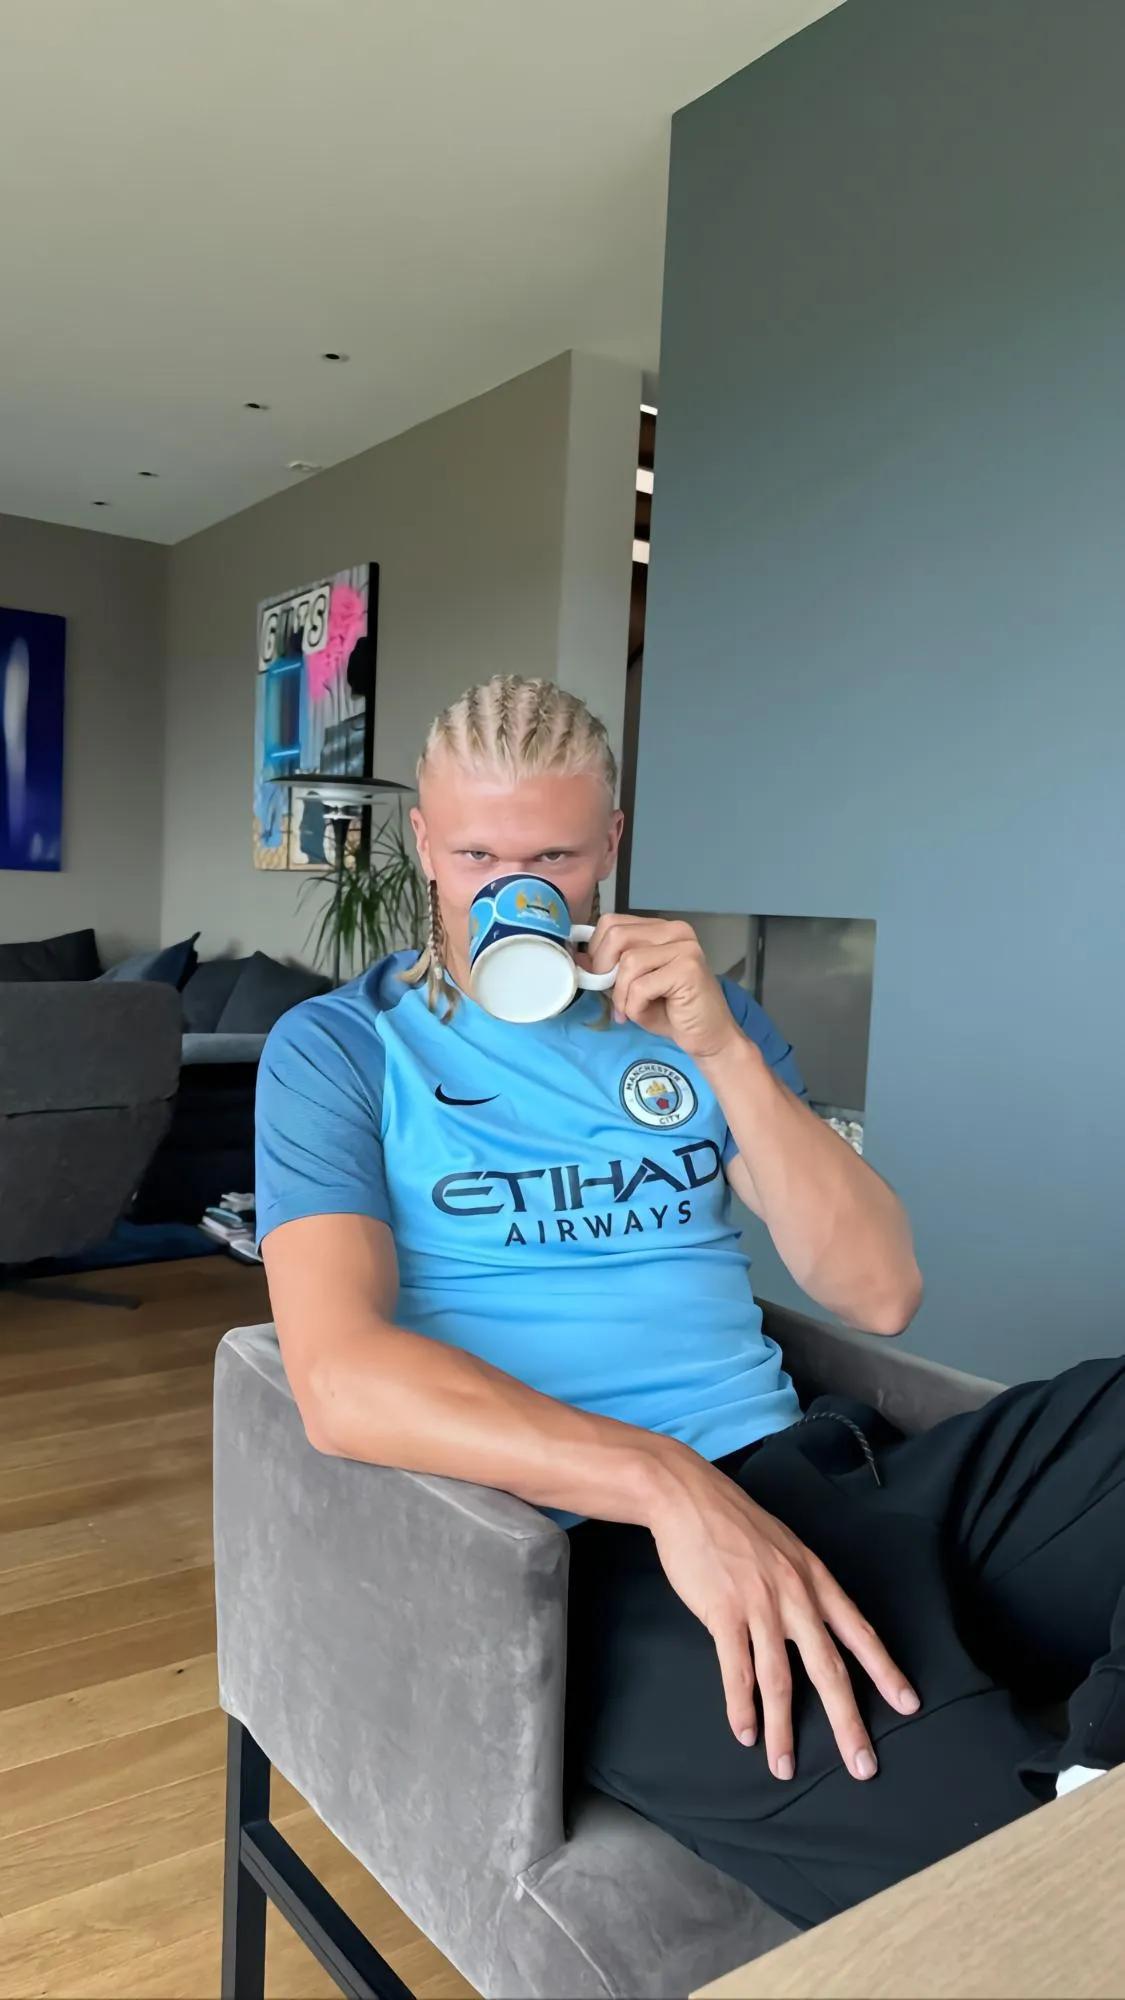 哈兰德身穿曼城球衣，用曼城马克杯喝水的照片。
球衣是曼城老球衣，被子上是曼城的老(1)